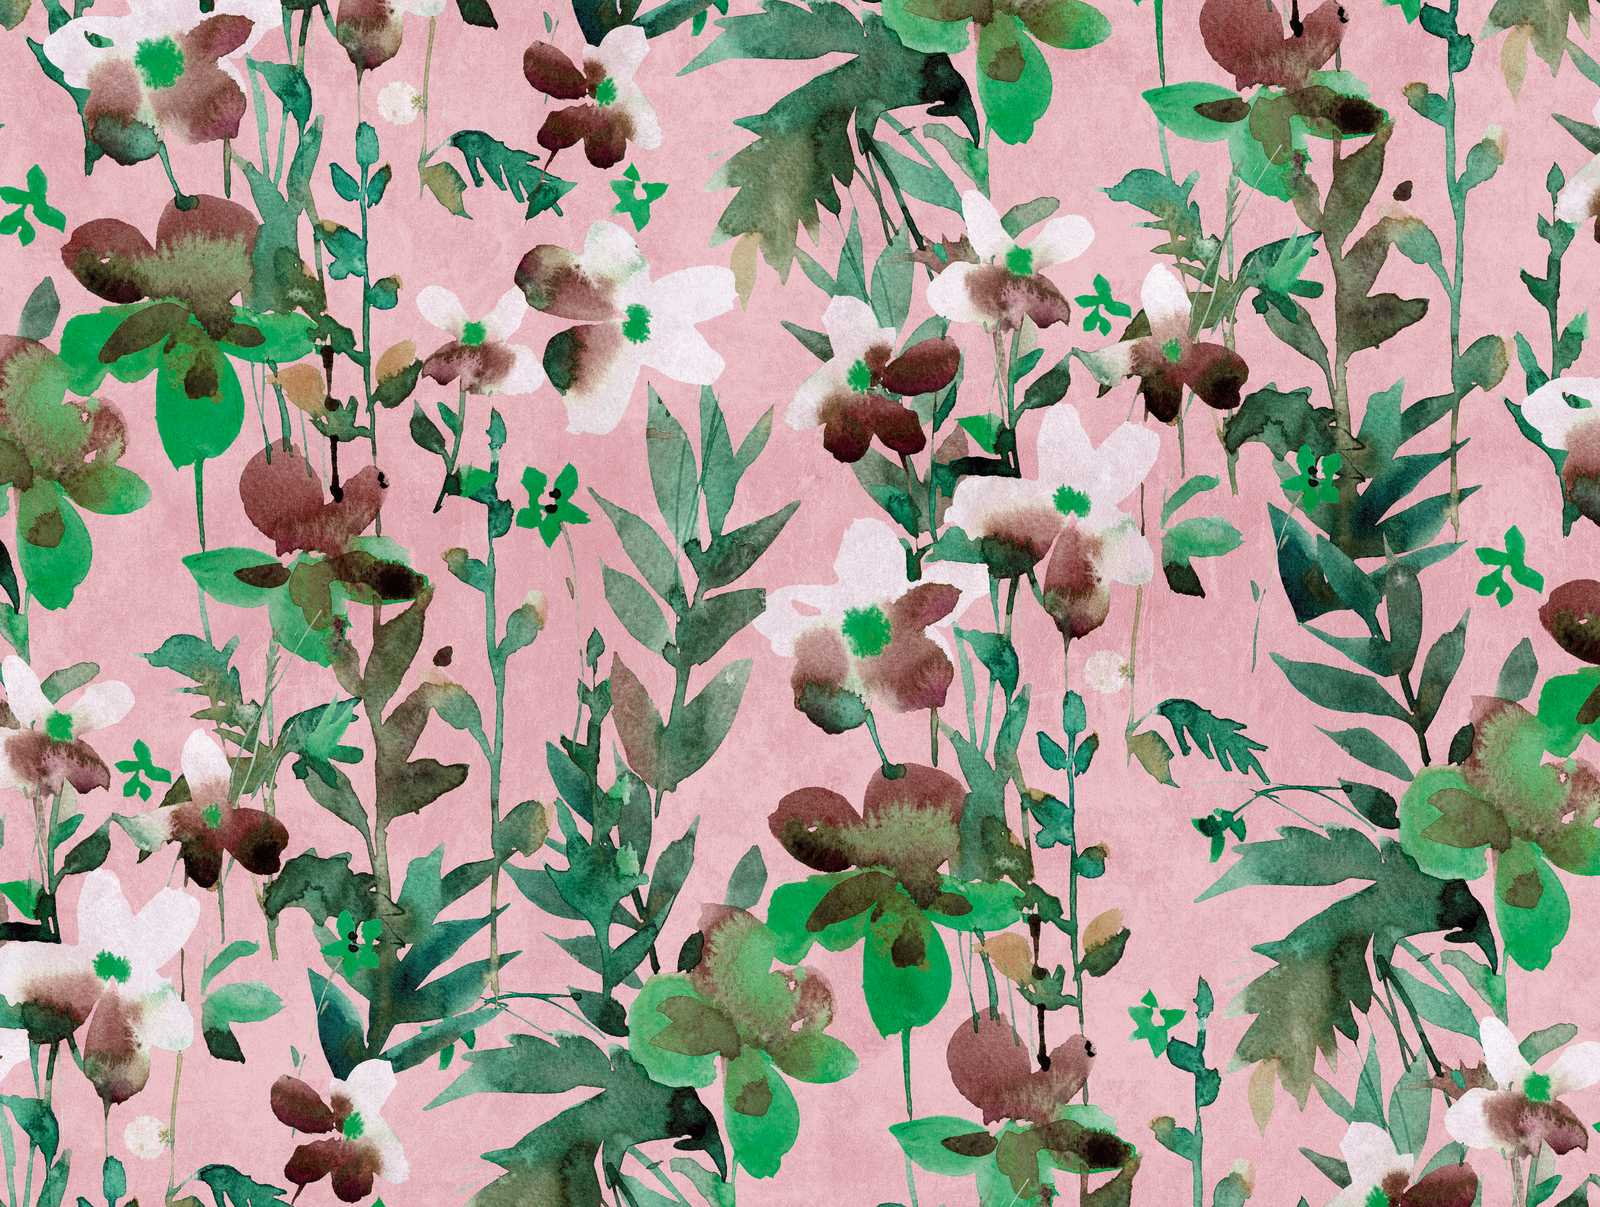             Wallpaper novelty - flowers watercolour motif wallpaper, pink & green
        